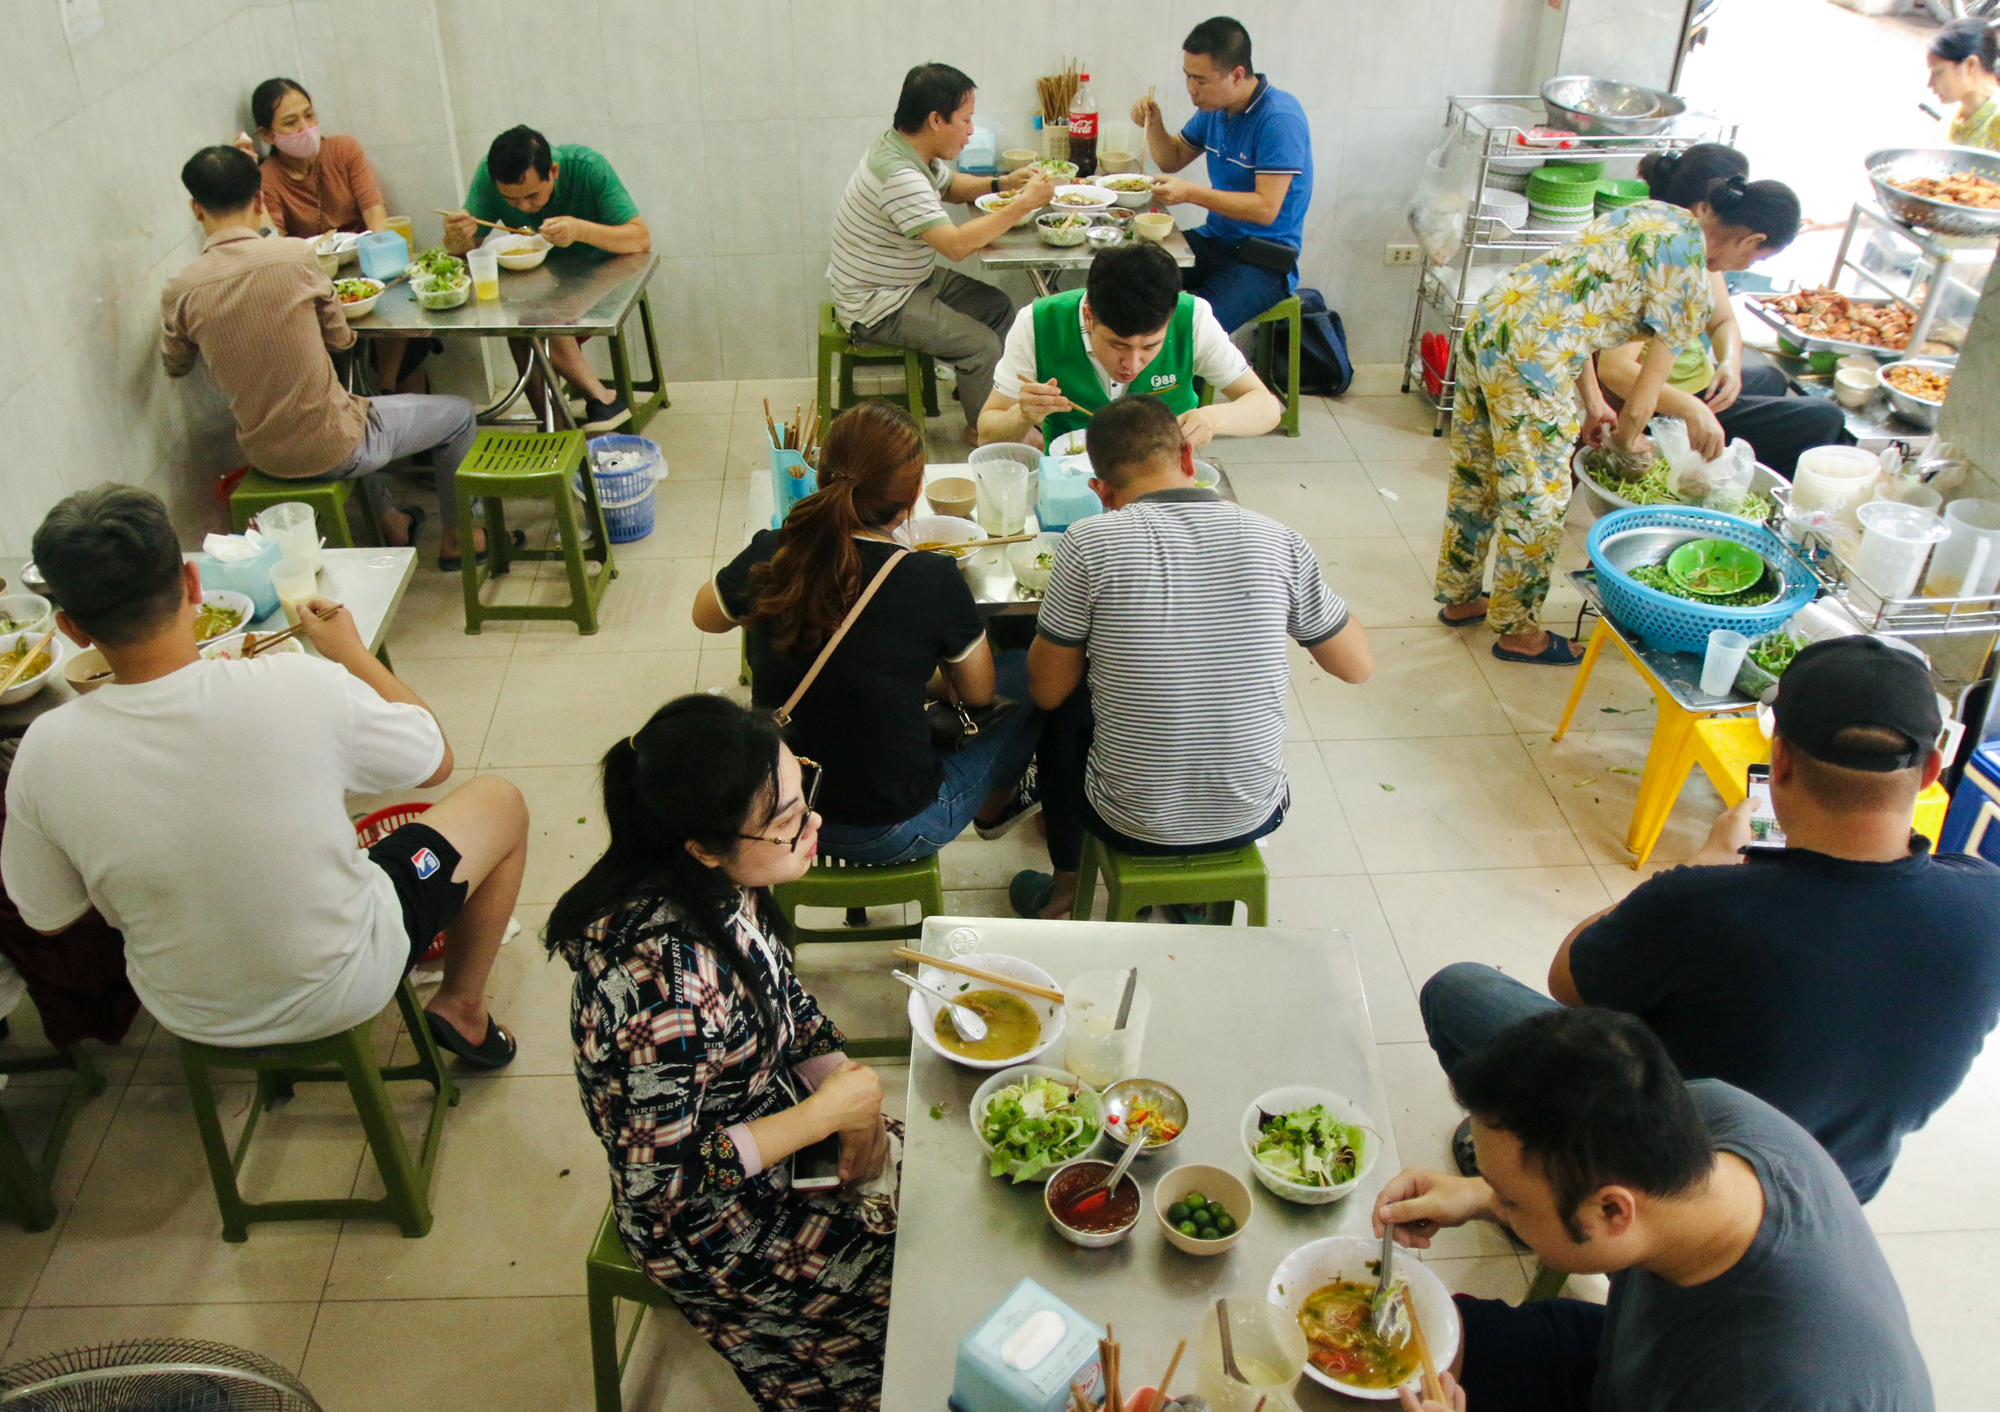 Quán bún đầu cá hiếm hoi ở Hà Nội, siêu đông khách nhờ tận dụng thứ bỏ đi - Ảnh 1.